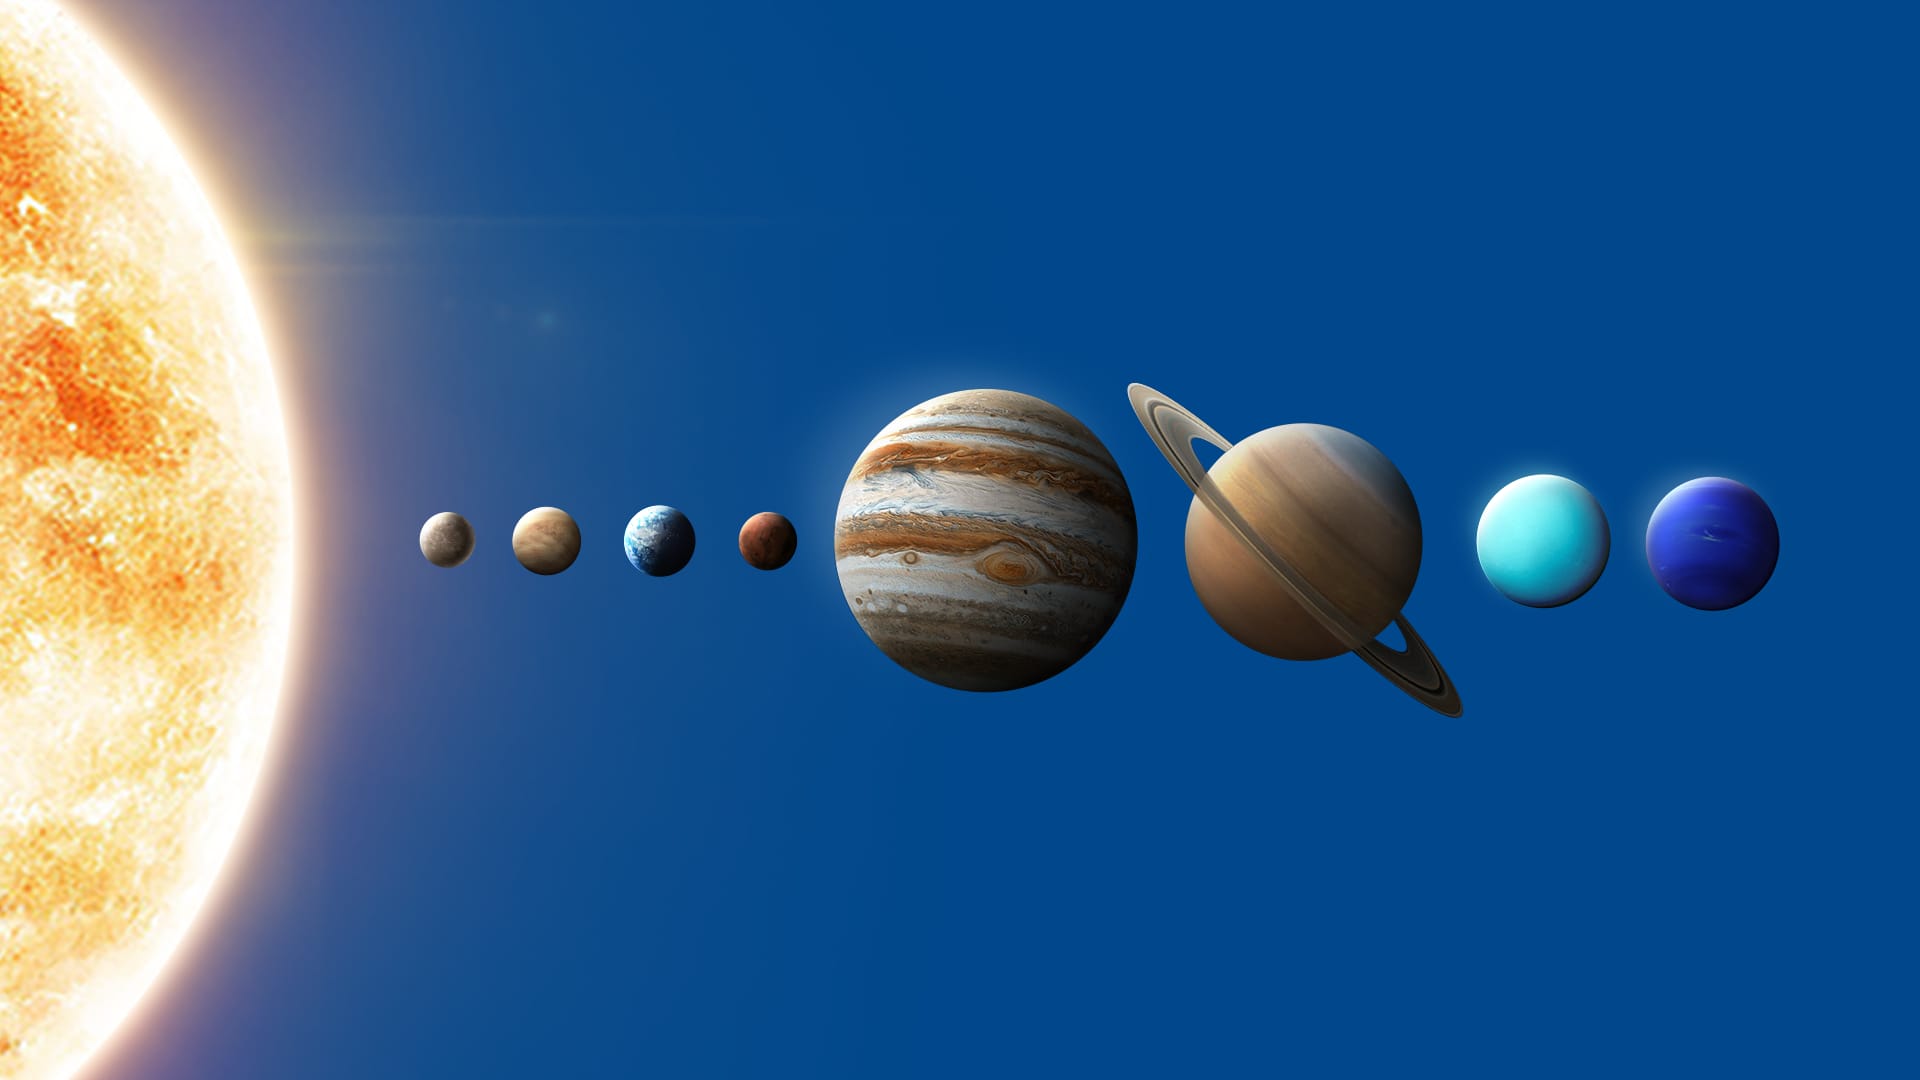 Модель солнечной системы своими руками из бумаги и картона, фото - 1igolka.com